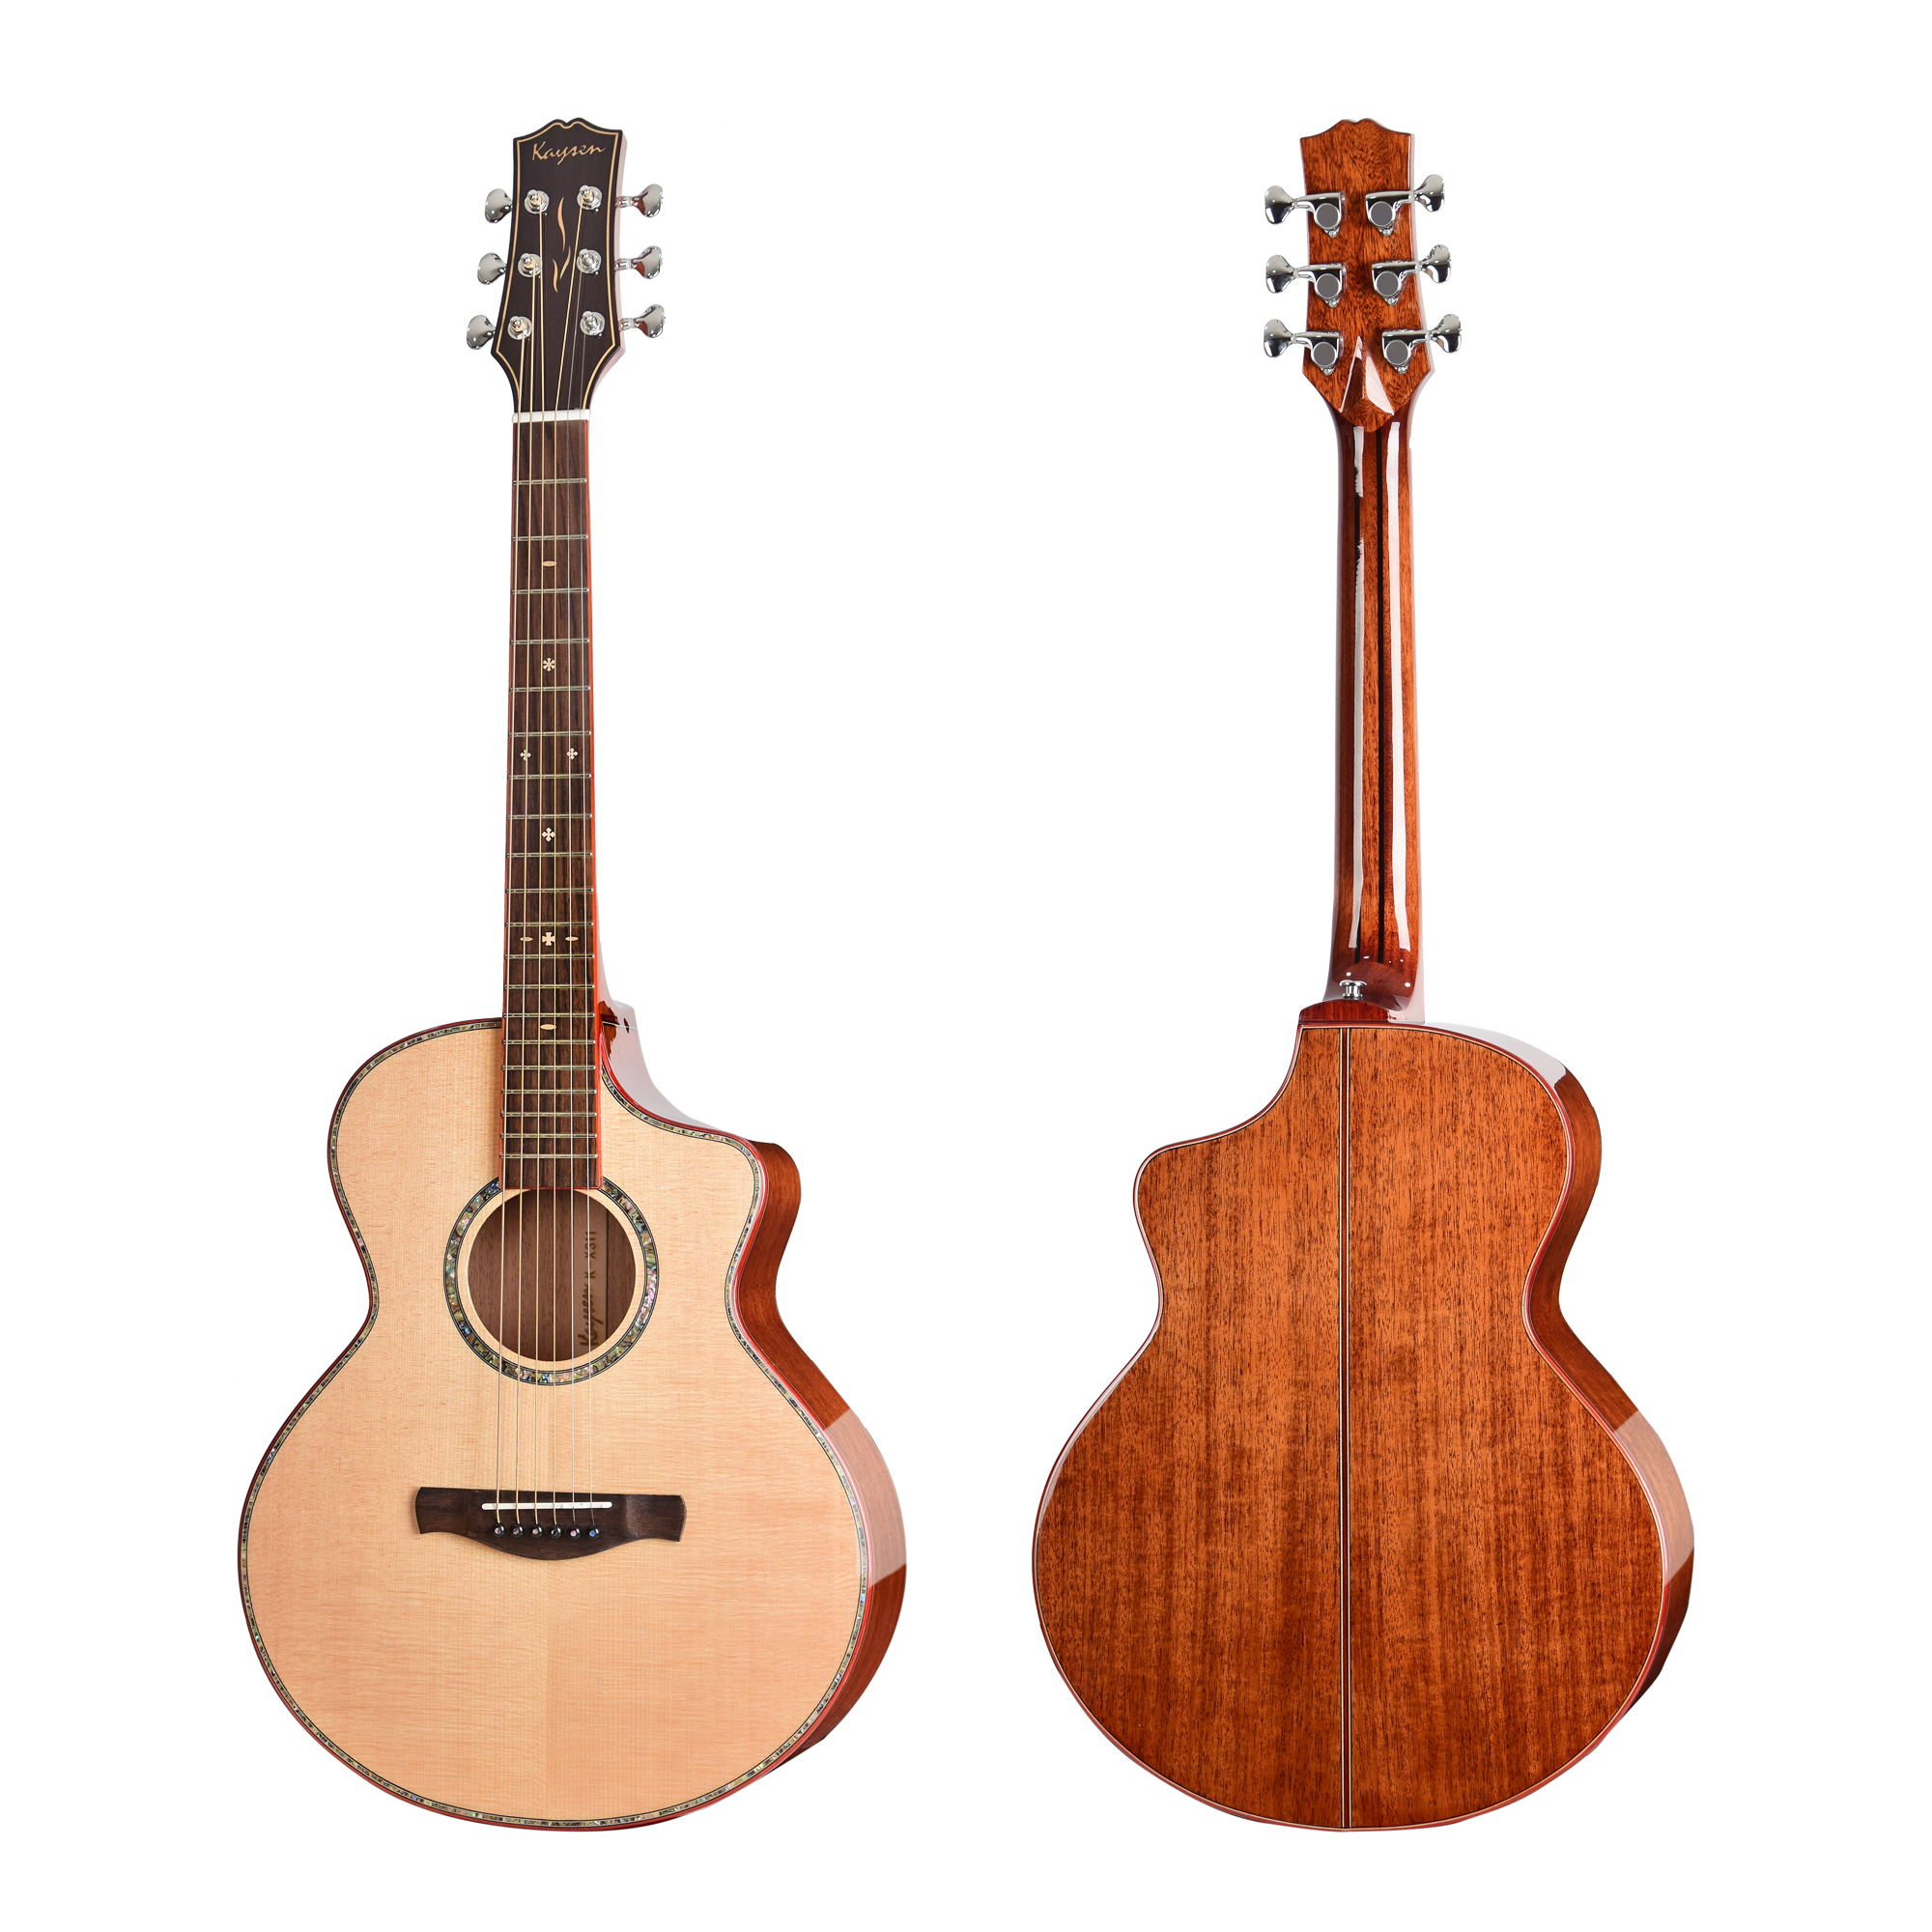 גיטרה אקוסטית מוגברת עץ מלא עם אפקטים Electric Acoustic guitar solid wood